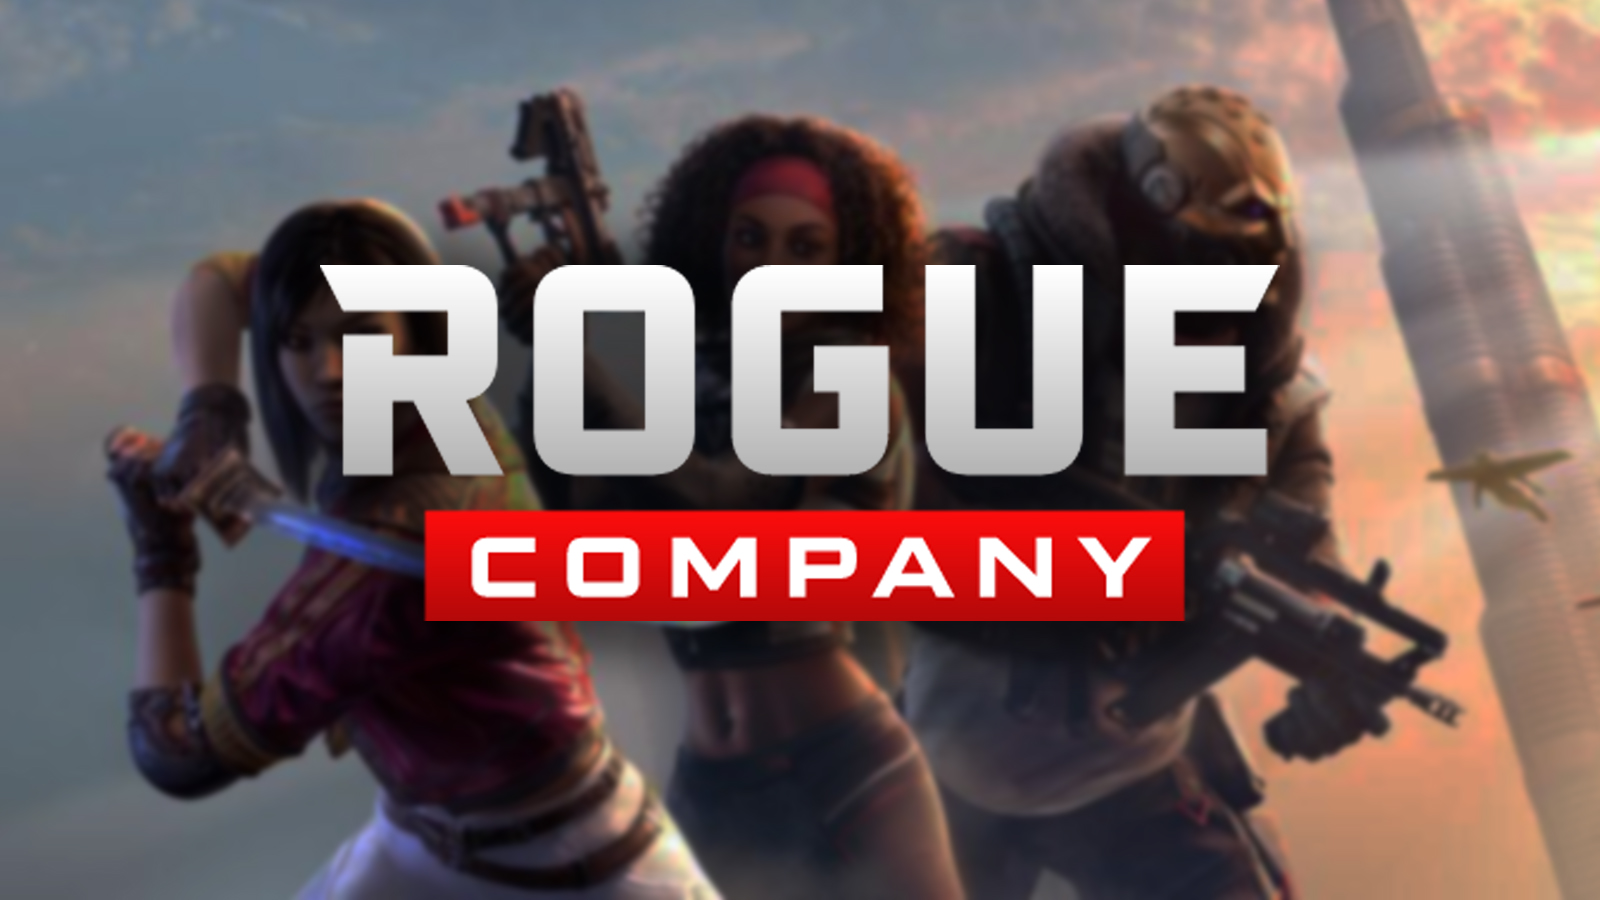 Rogue Company's avatar